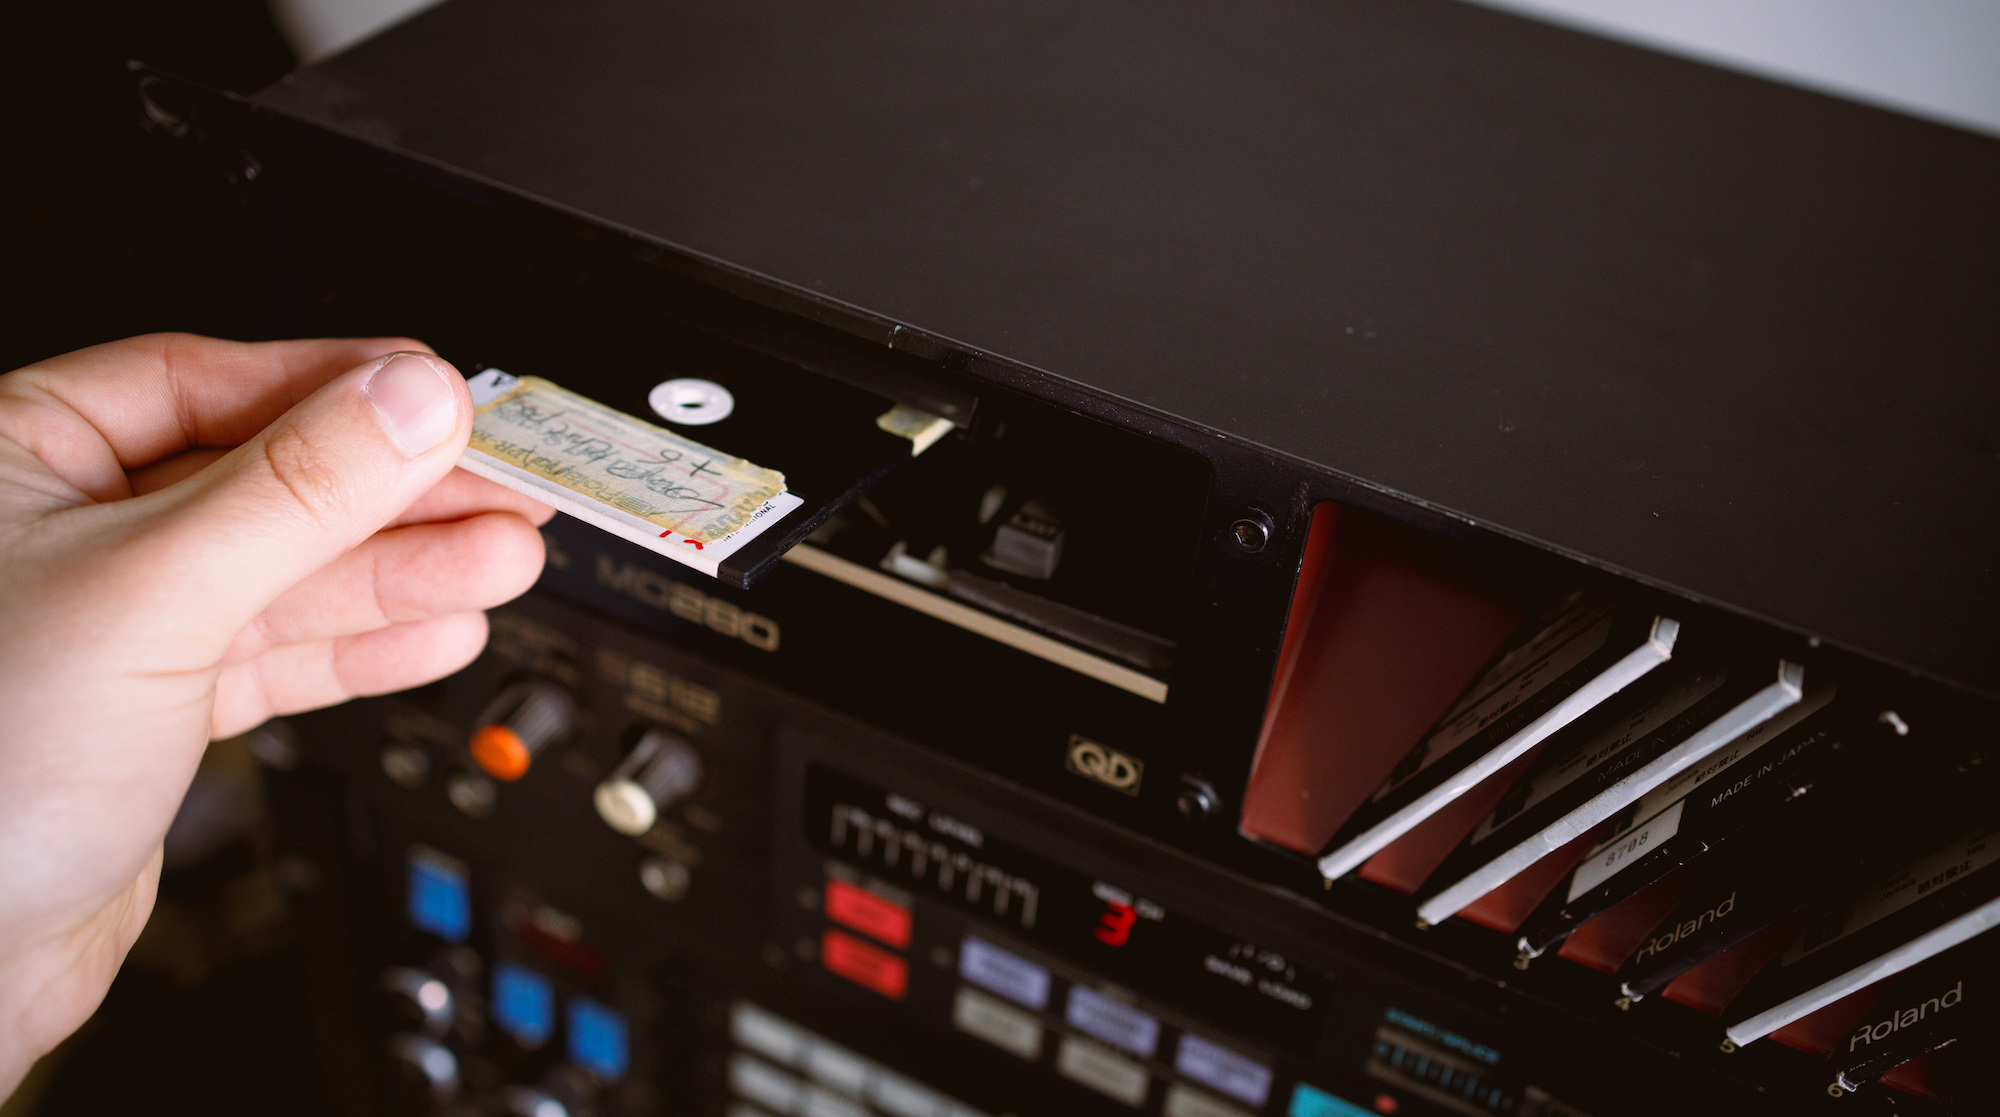 Using old floppy disks in vintage machines